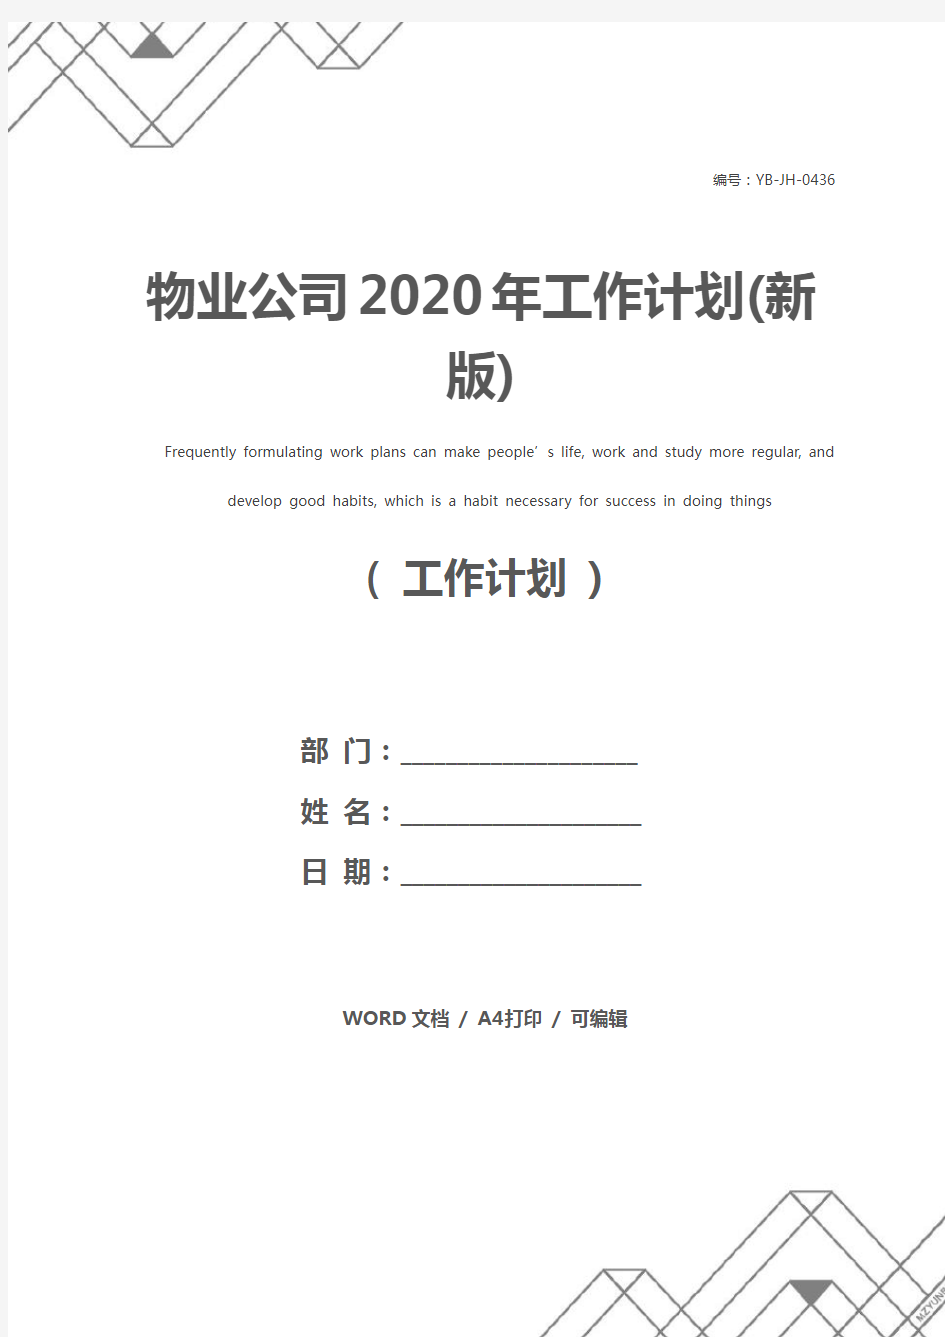 物业公司2020年工作计划(新版)